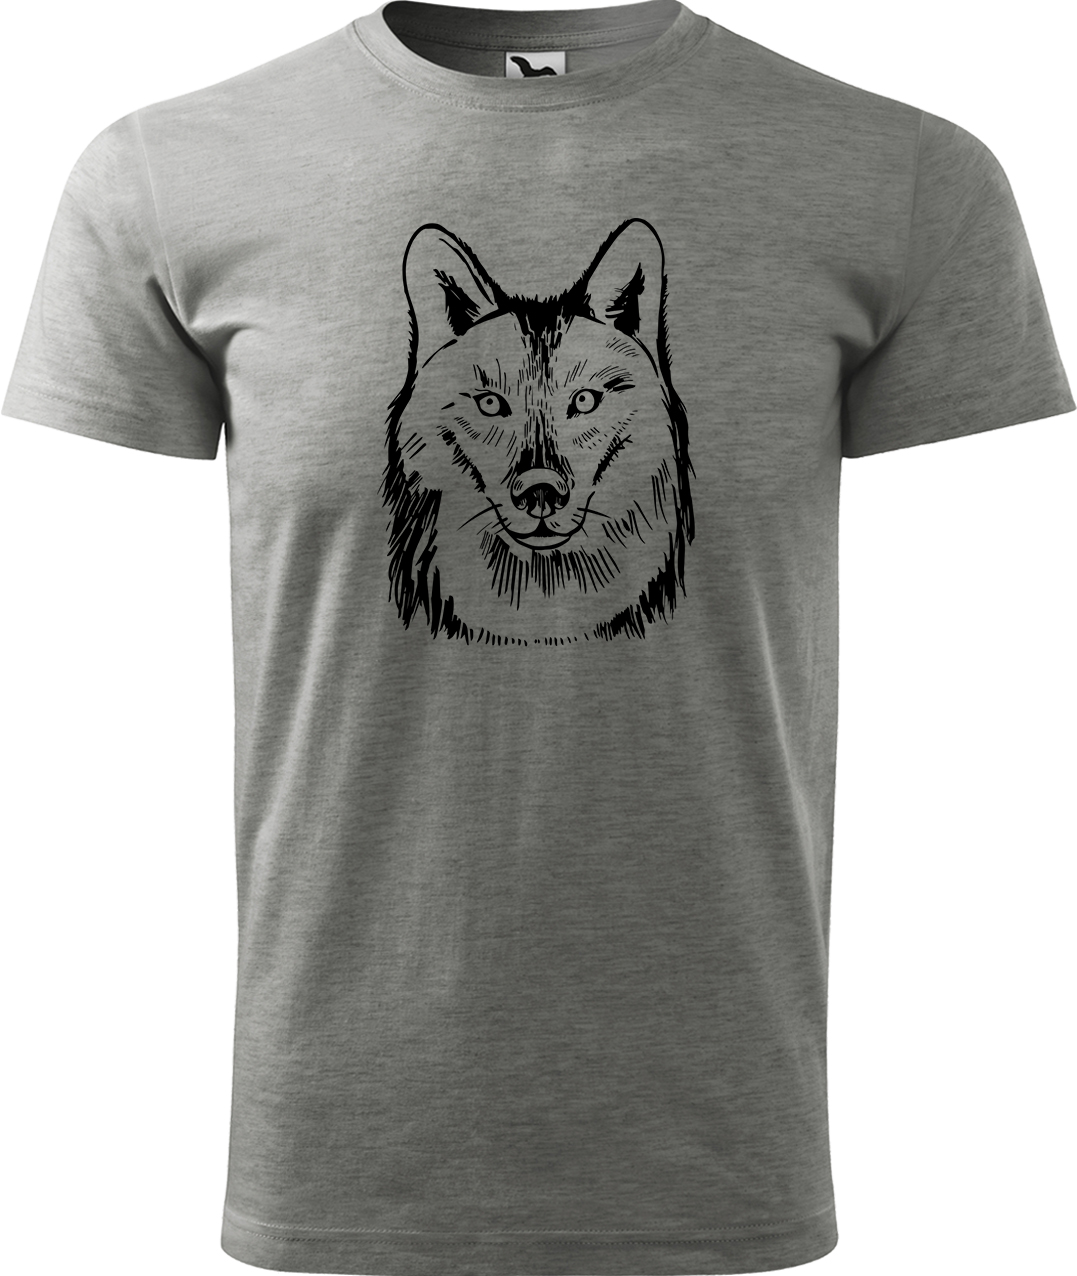 Pánské tričko s vlkem - Kresba vlka Velikost: 2XL, Barva: Tmavě šedý melír (12), Střih: pánský